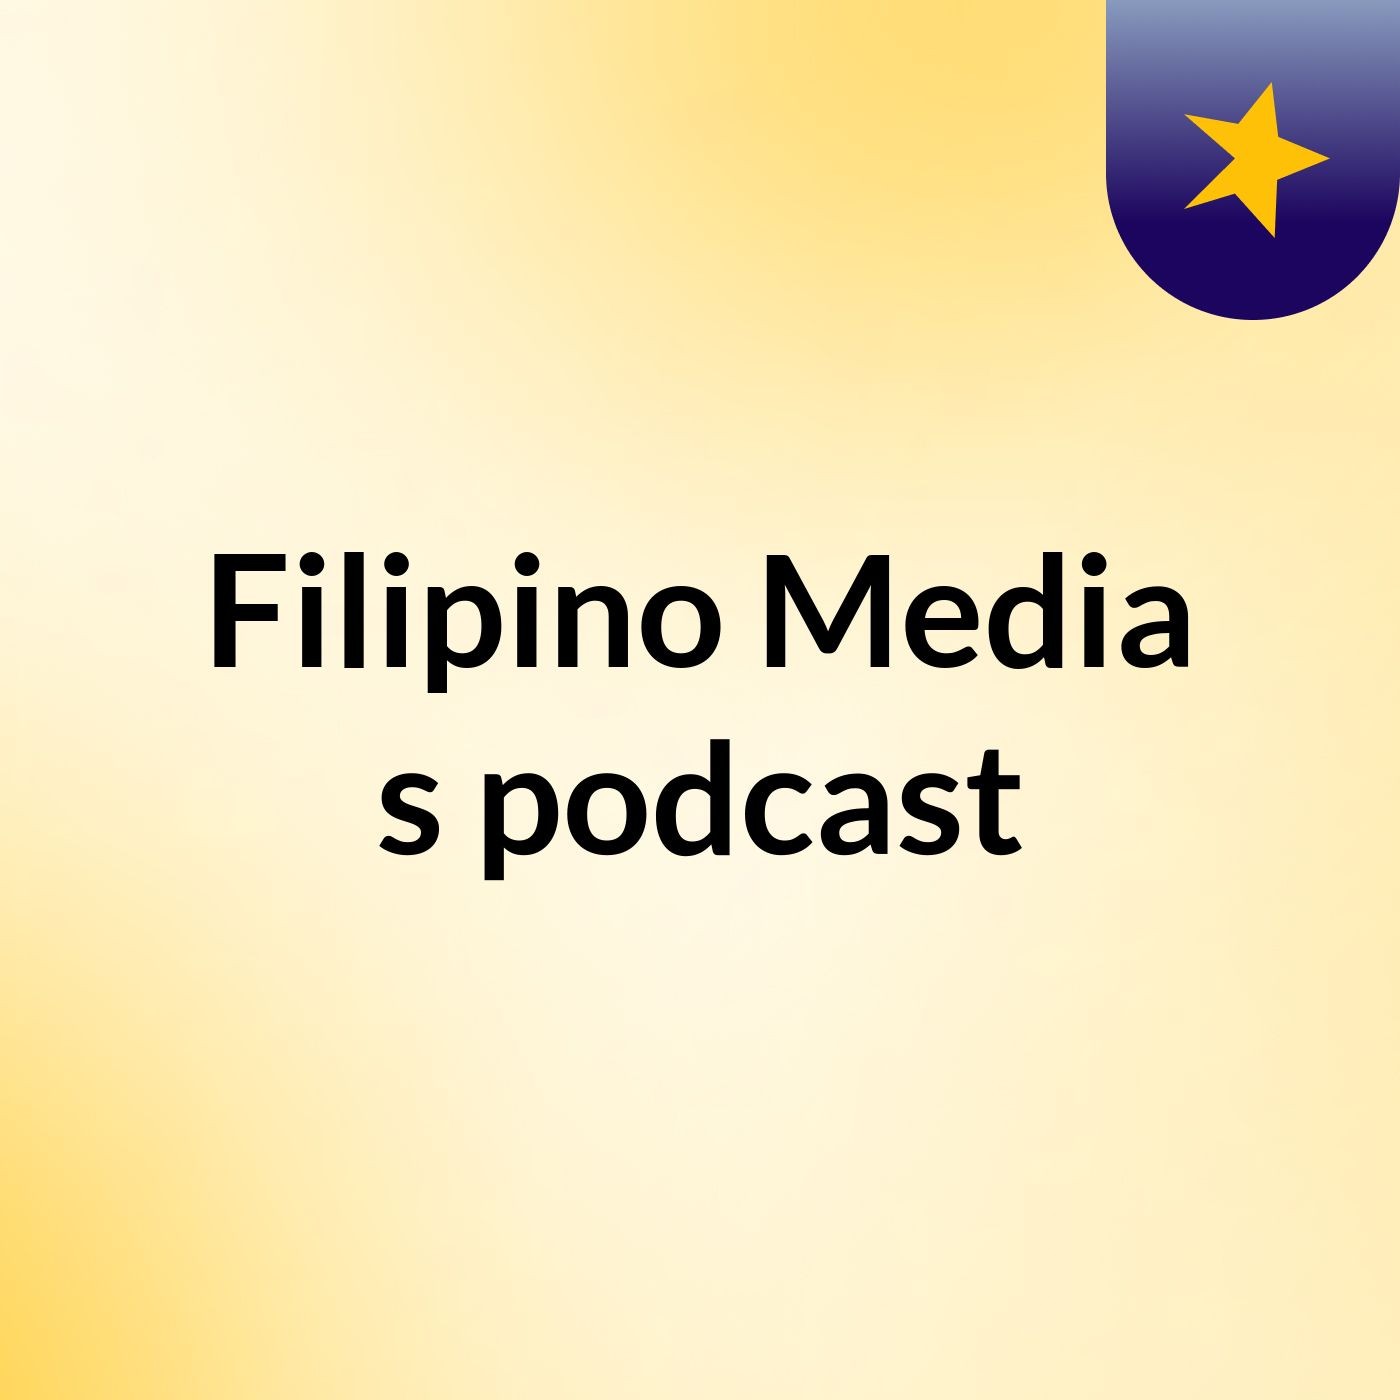 Filipino Media's podcast